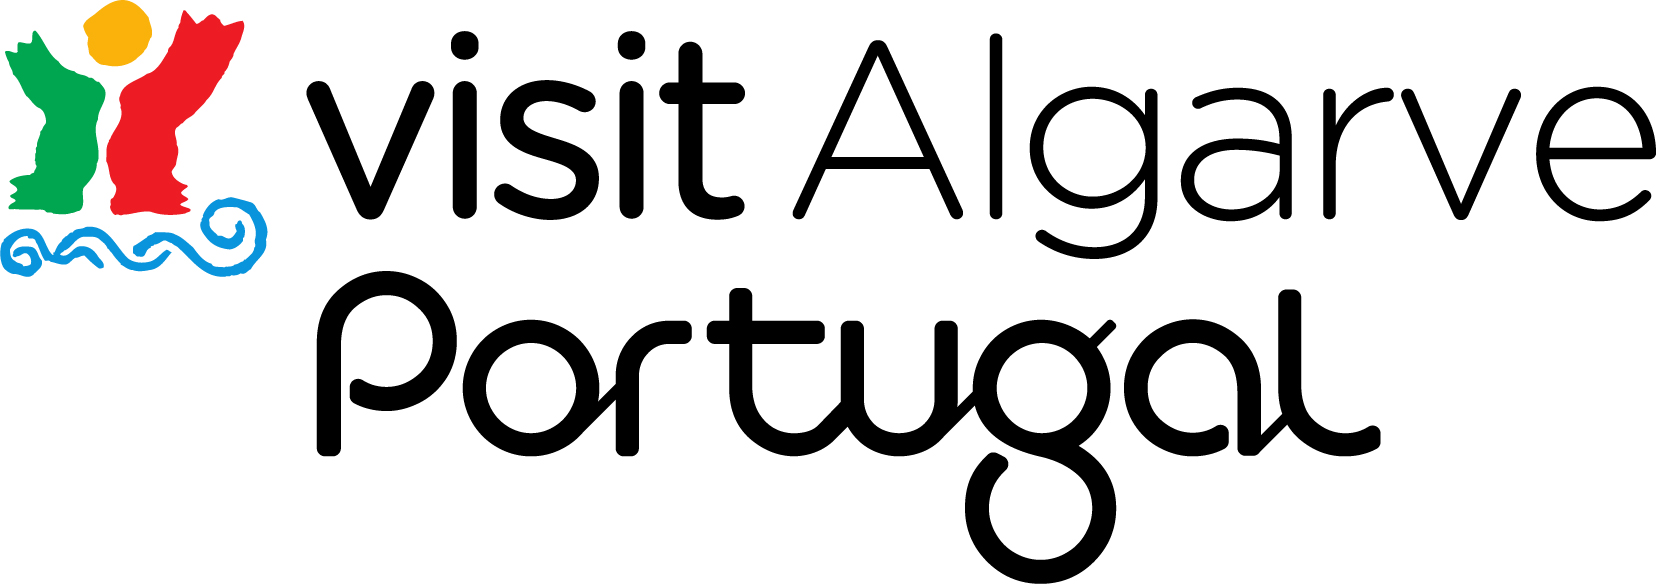 Algarve Tourism Association logo